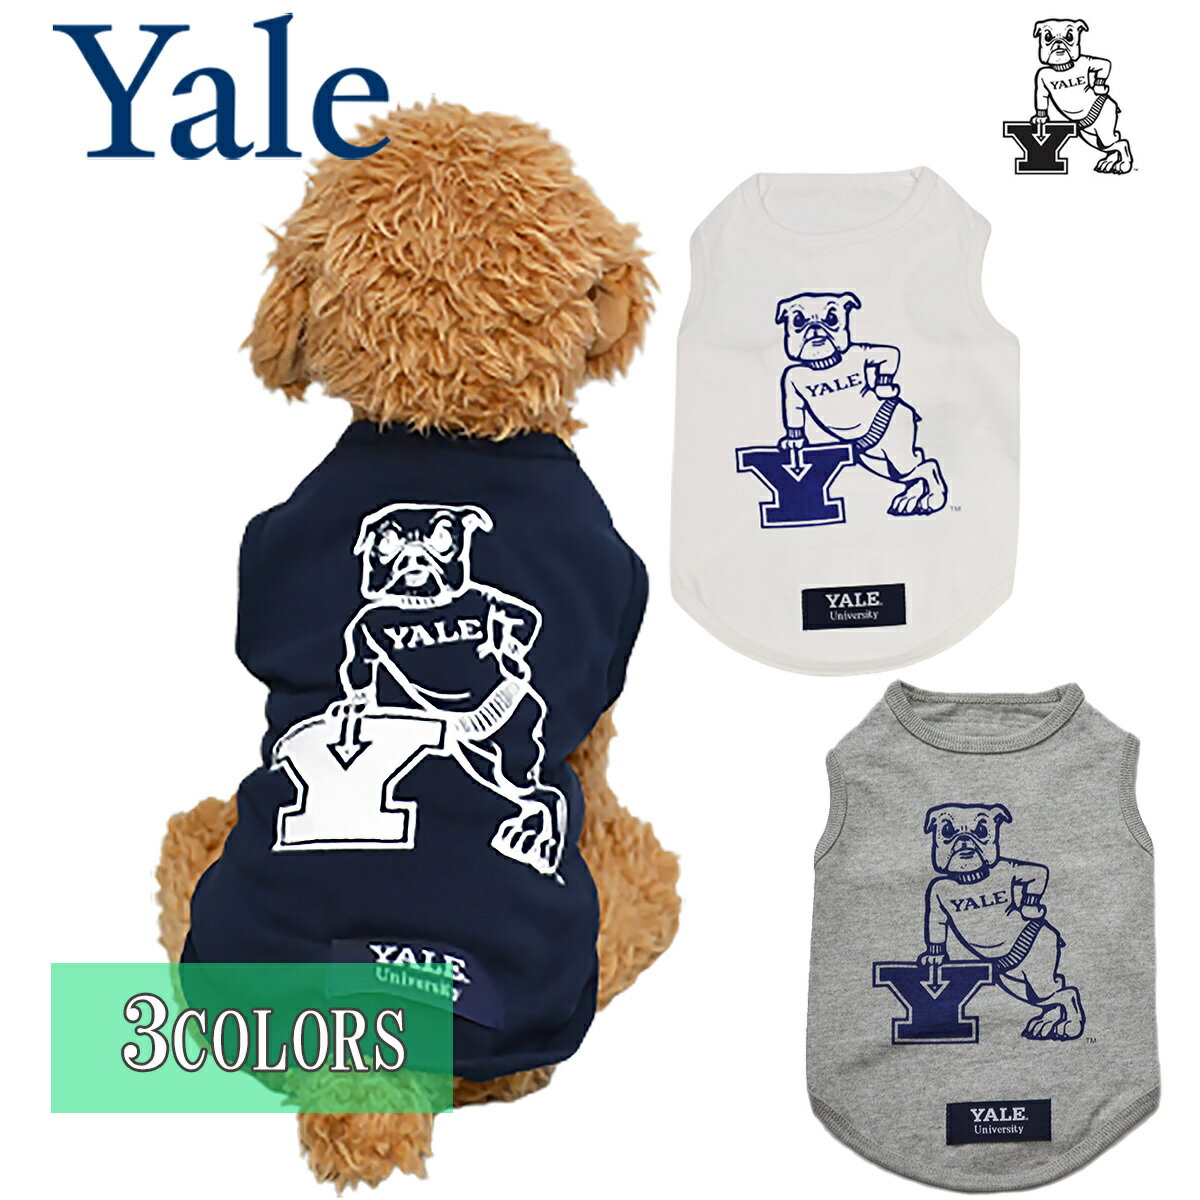 送料無料 YALE （イェール） 犬服 Tシャツ ドッグウエア YALE-079 カレッジ ロゴ キャラクター アメカジ 送料無料 YALE （イェール） 犬服 Tシャツ ドッグウエア YALE-079 カレッジ ロゴ キャラクター アメカジ YALE（イェール）とは YALE（Yale University）は米国コネチカット州ニューヘイブン市に本部を置く1701年創設の私立大学です。アメリカ東部の名門大学群アイビー・リーグに所属する8大学のうちの1校。世界最高峰の大学の一つとして数えられるもカレッジアイテムのデザインが秀逸として人気を博しています。YALEのブランドはアメリカ国外でも広く知られており、名門アイビーのライフスタイルを彷彿させるブランドとして永年注目されています。日本国内でも、1970年代に流行したUCLAに並び、古き良きアメカジを代表するブランドの一つと言っても過言ではありません。YALEのブランドは、名門大学群アイビー・リーグの名を冠した紛れも無い"カレッジ"であり、"カレッジ風"のプリントとは一線を画す、本物のカレッジプリントを味わえるものとして一役買っています。TM & &#127276; Yale University YALE許諾ロゴのプリント オールシーズン対応のTシャツ生地 ワンちゃんと同じファッションを楽しみたい方 本物のカレッジアイテムをお探しの方 アメリカ東海岸テイストがお好きな方 スポーティーな着こなしをお求めの方 こんにちは！店長のハラダです。アメリカ東海岸の香りたっぷりのYALE（イェール）Tシャツです。この商品は、YALEからデザインの許諾を貰って生産しています。薄手の生地を使用しておりいろいろなコーディネートに合わせやすい逸品です。カラーも人気の定番色！是非この機会にどーぞ！TYPE Tシャツ（天竺）MATERIAL コットン　100％DOGモデル：　3.5kg　Mサイズ着用（推定想定サイズ）着用サイズが分からない場合はお問合わせ下さい。※モニターの発色の具合によって実際のものと色が異なる場合がありますご注意下さい 【在庫がある場合】1〜3営業日以内に発送 1